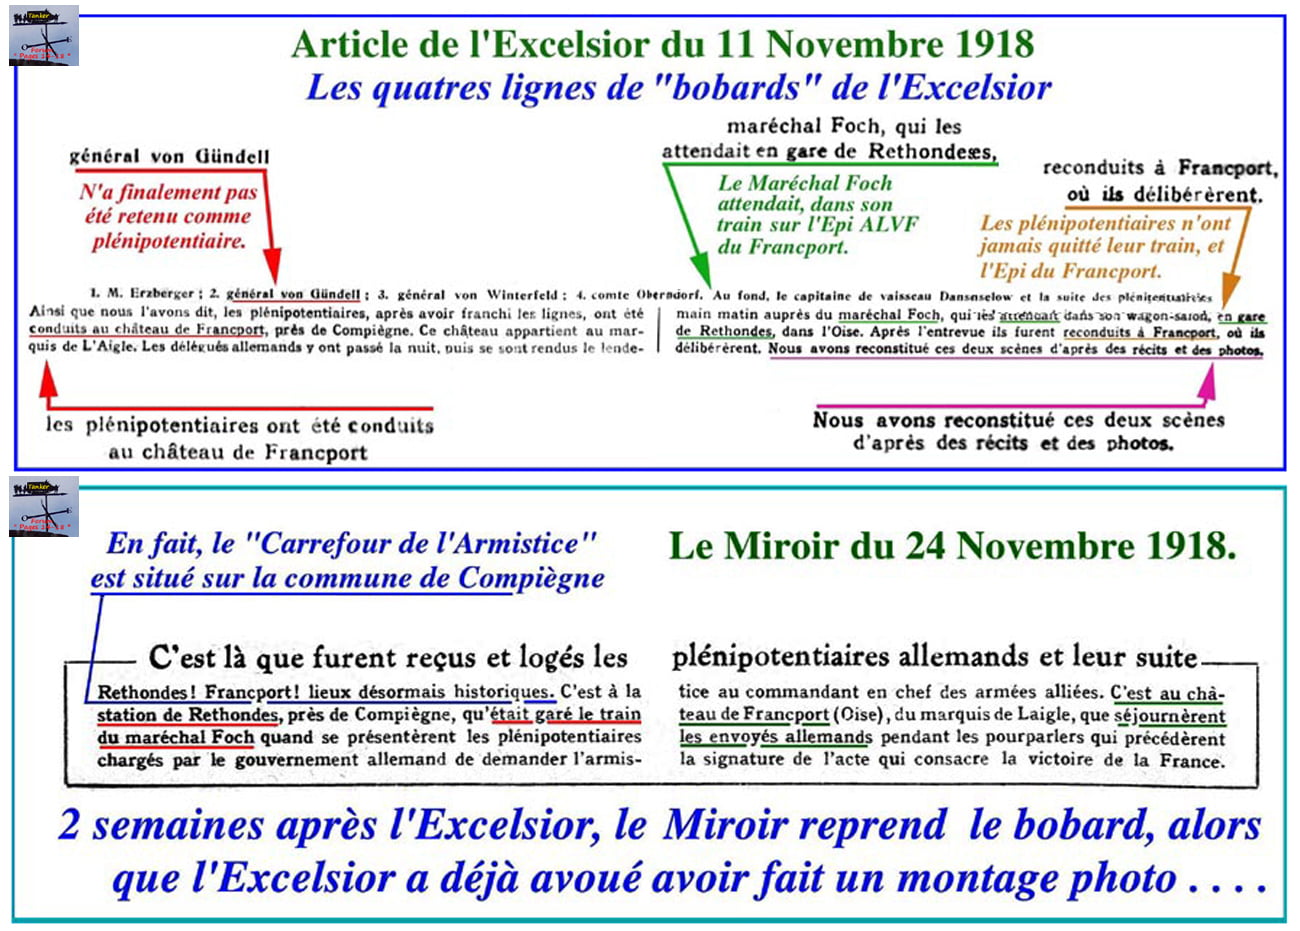 03a - Le Miroir - Bobard du Francport-min.jpg